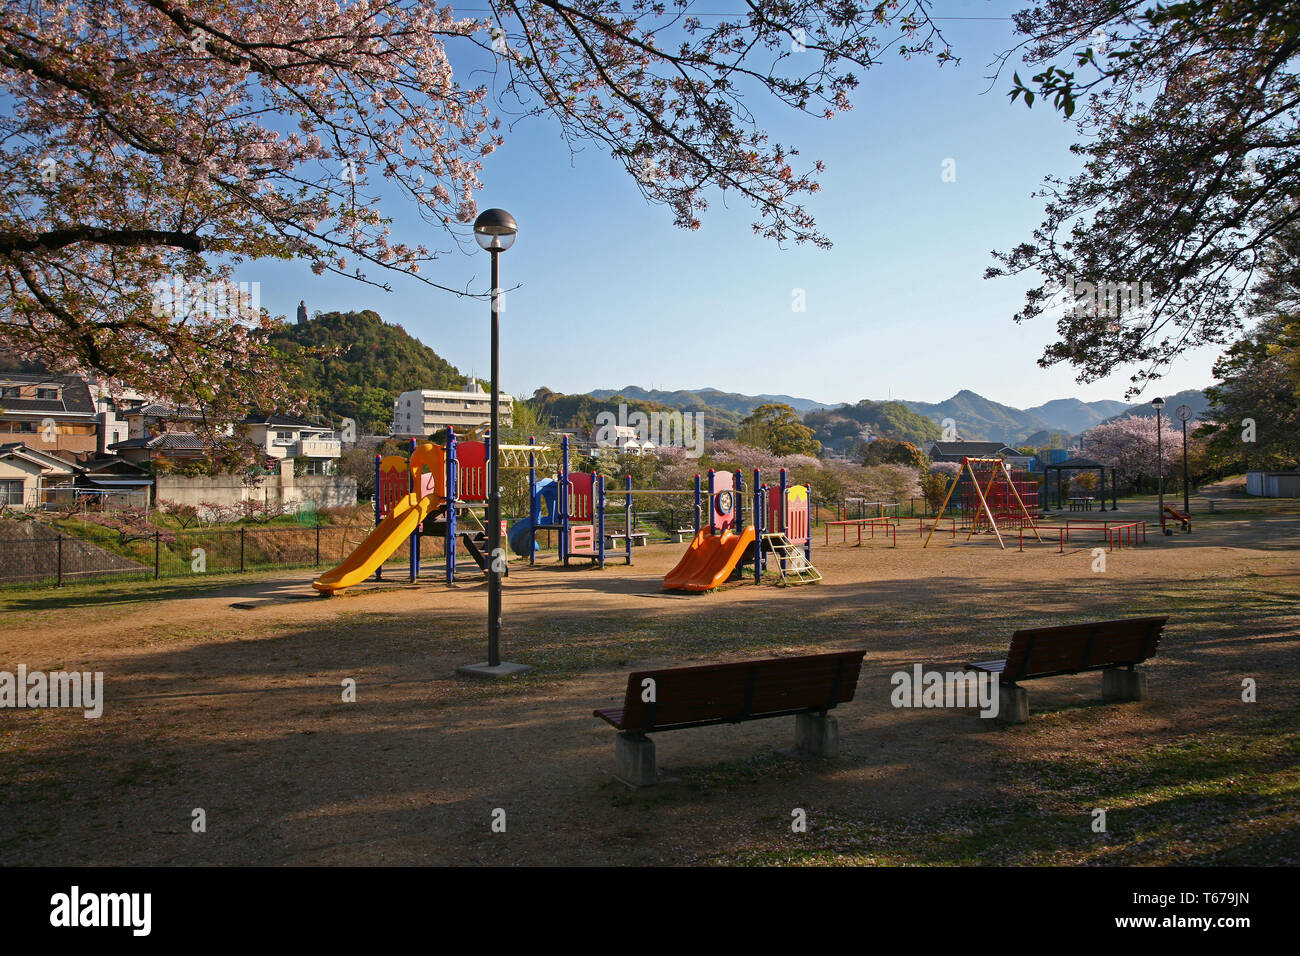 Piccolo parco e playgound con fiori di ciliegio in Giappone Foto Stock